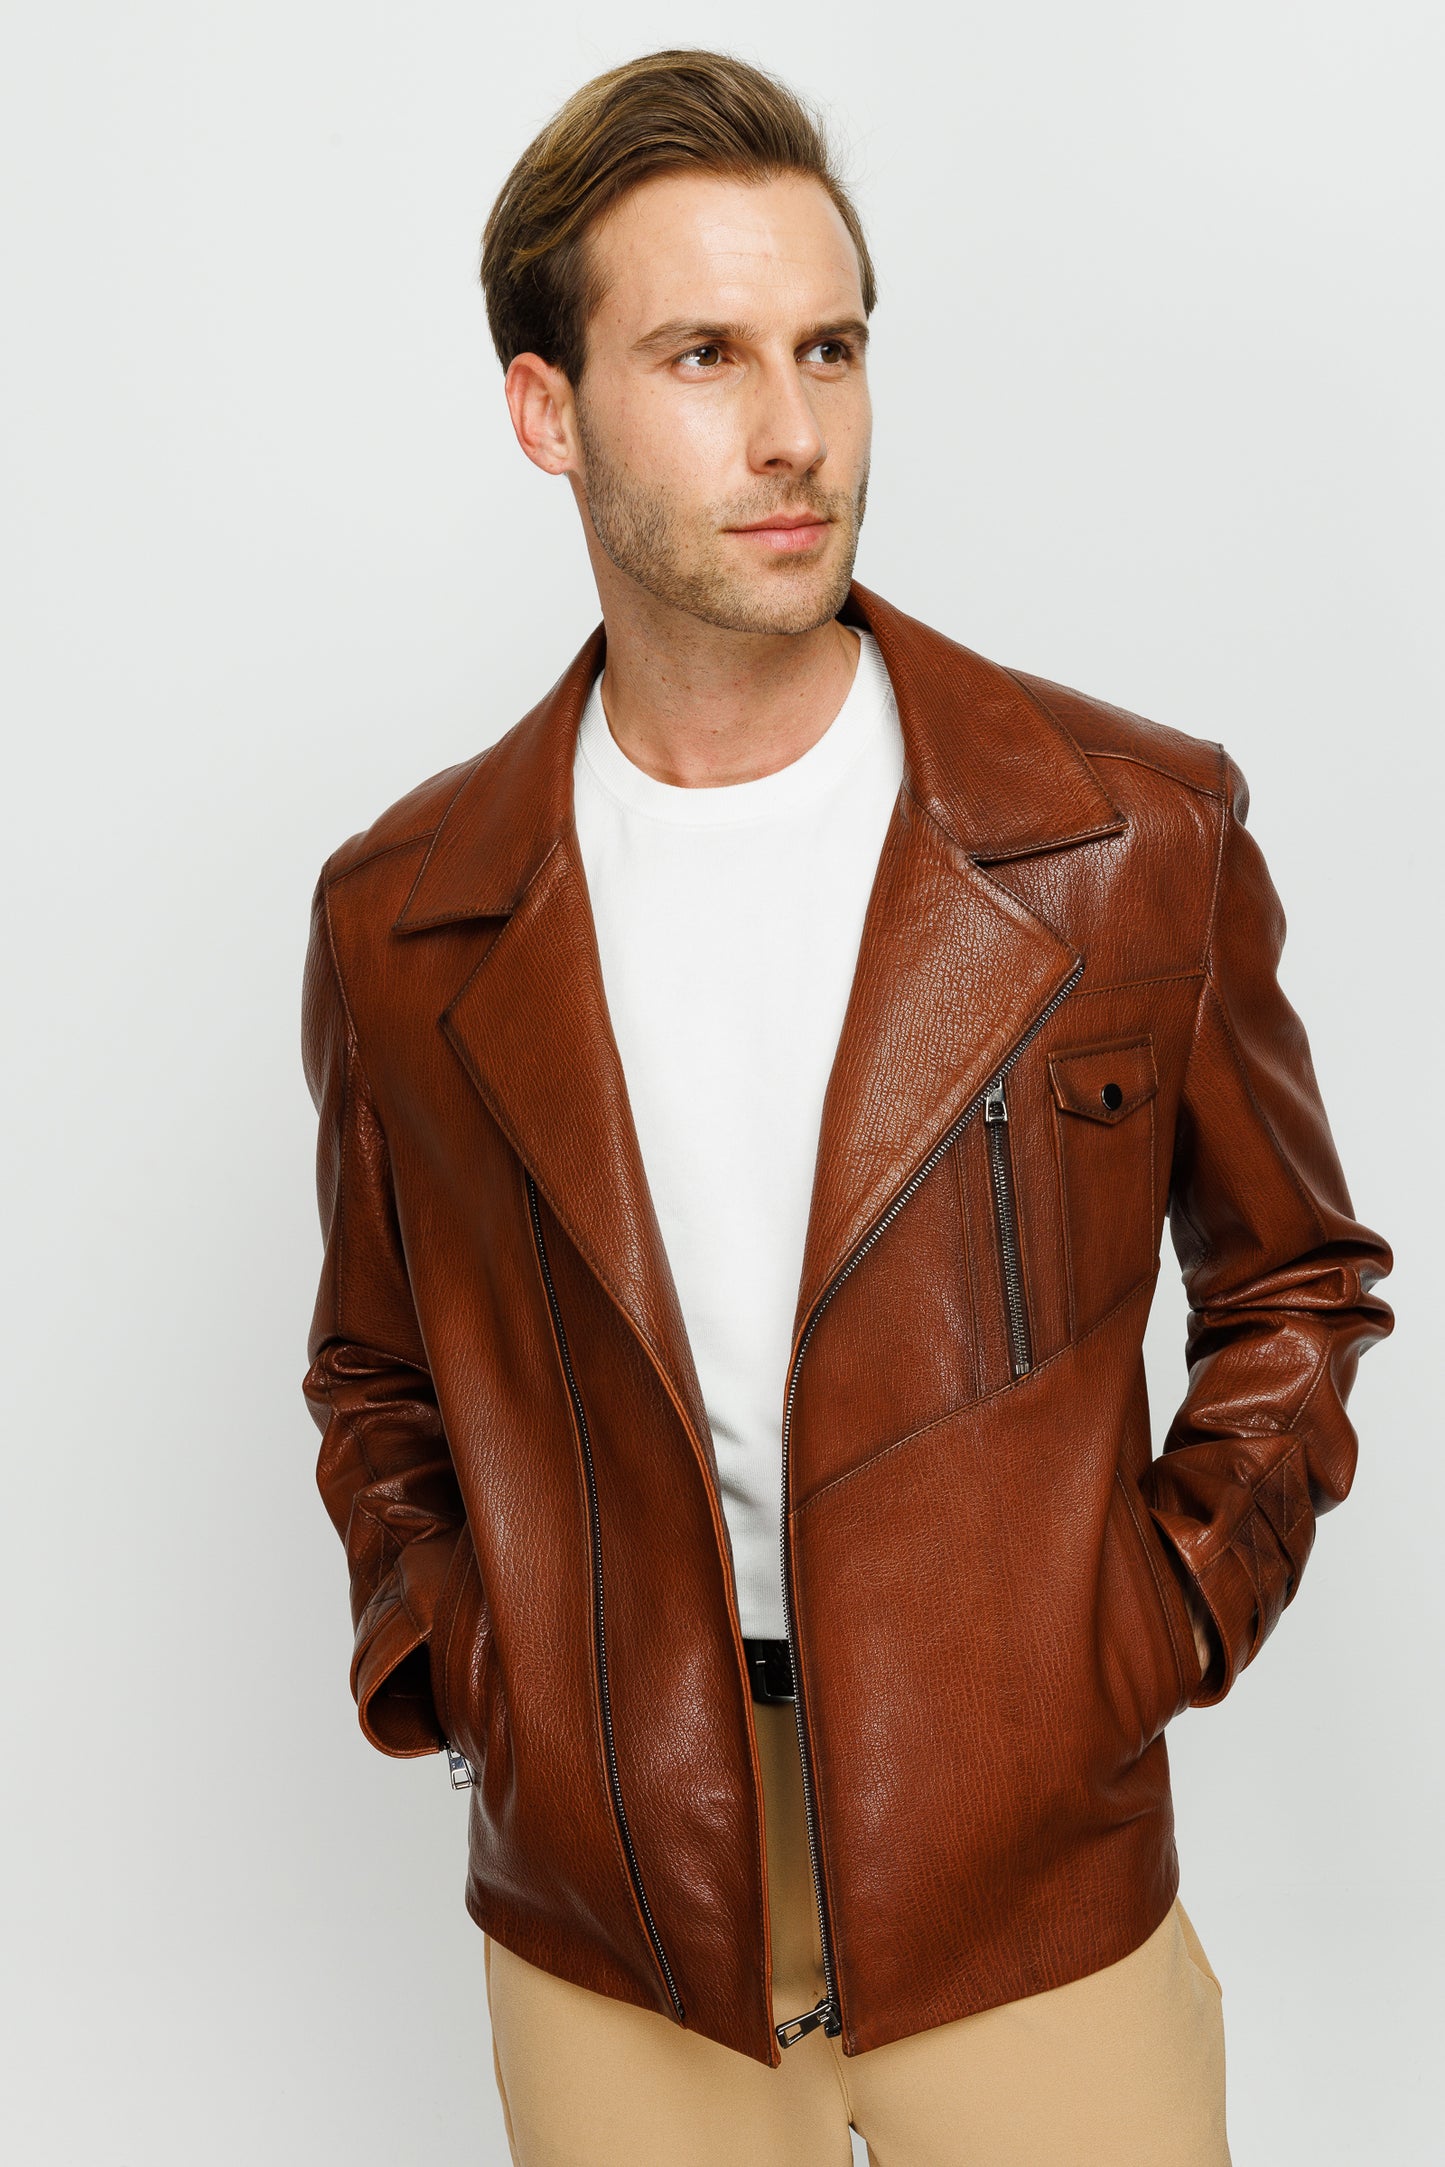 The Monola Tan Leather Men Jacket